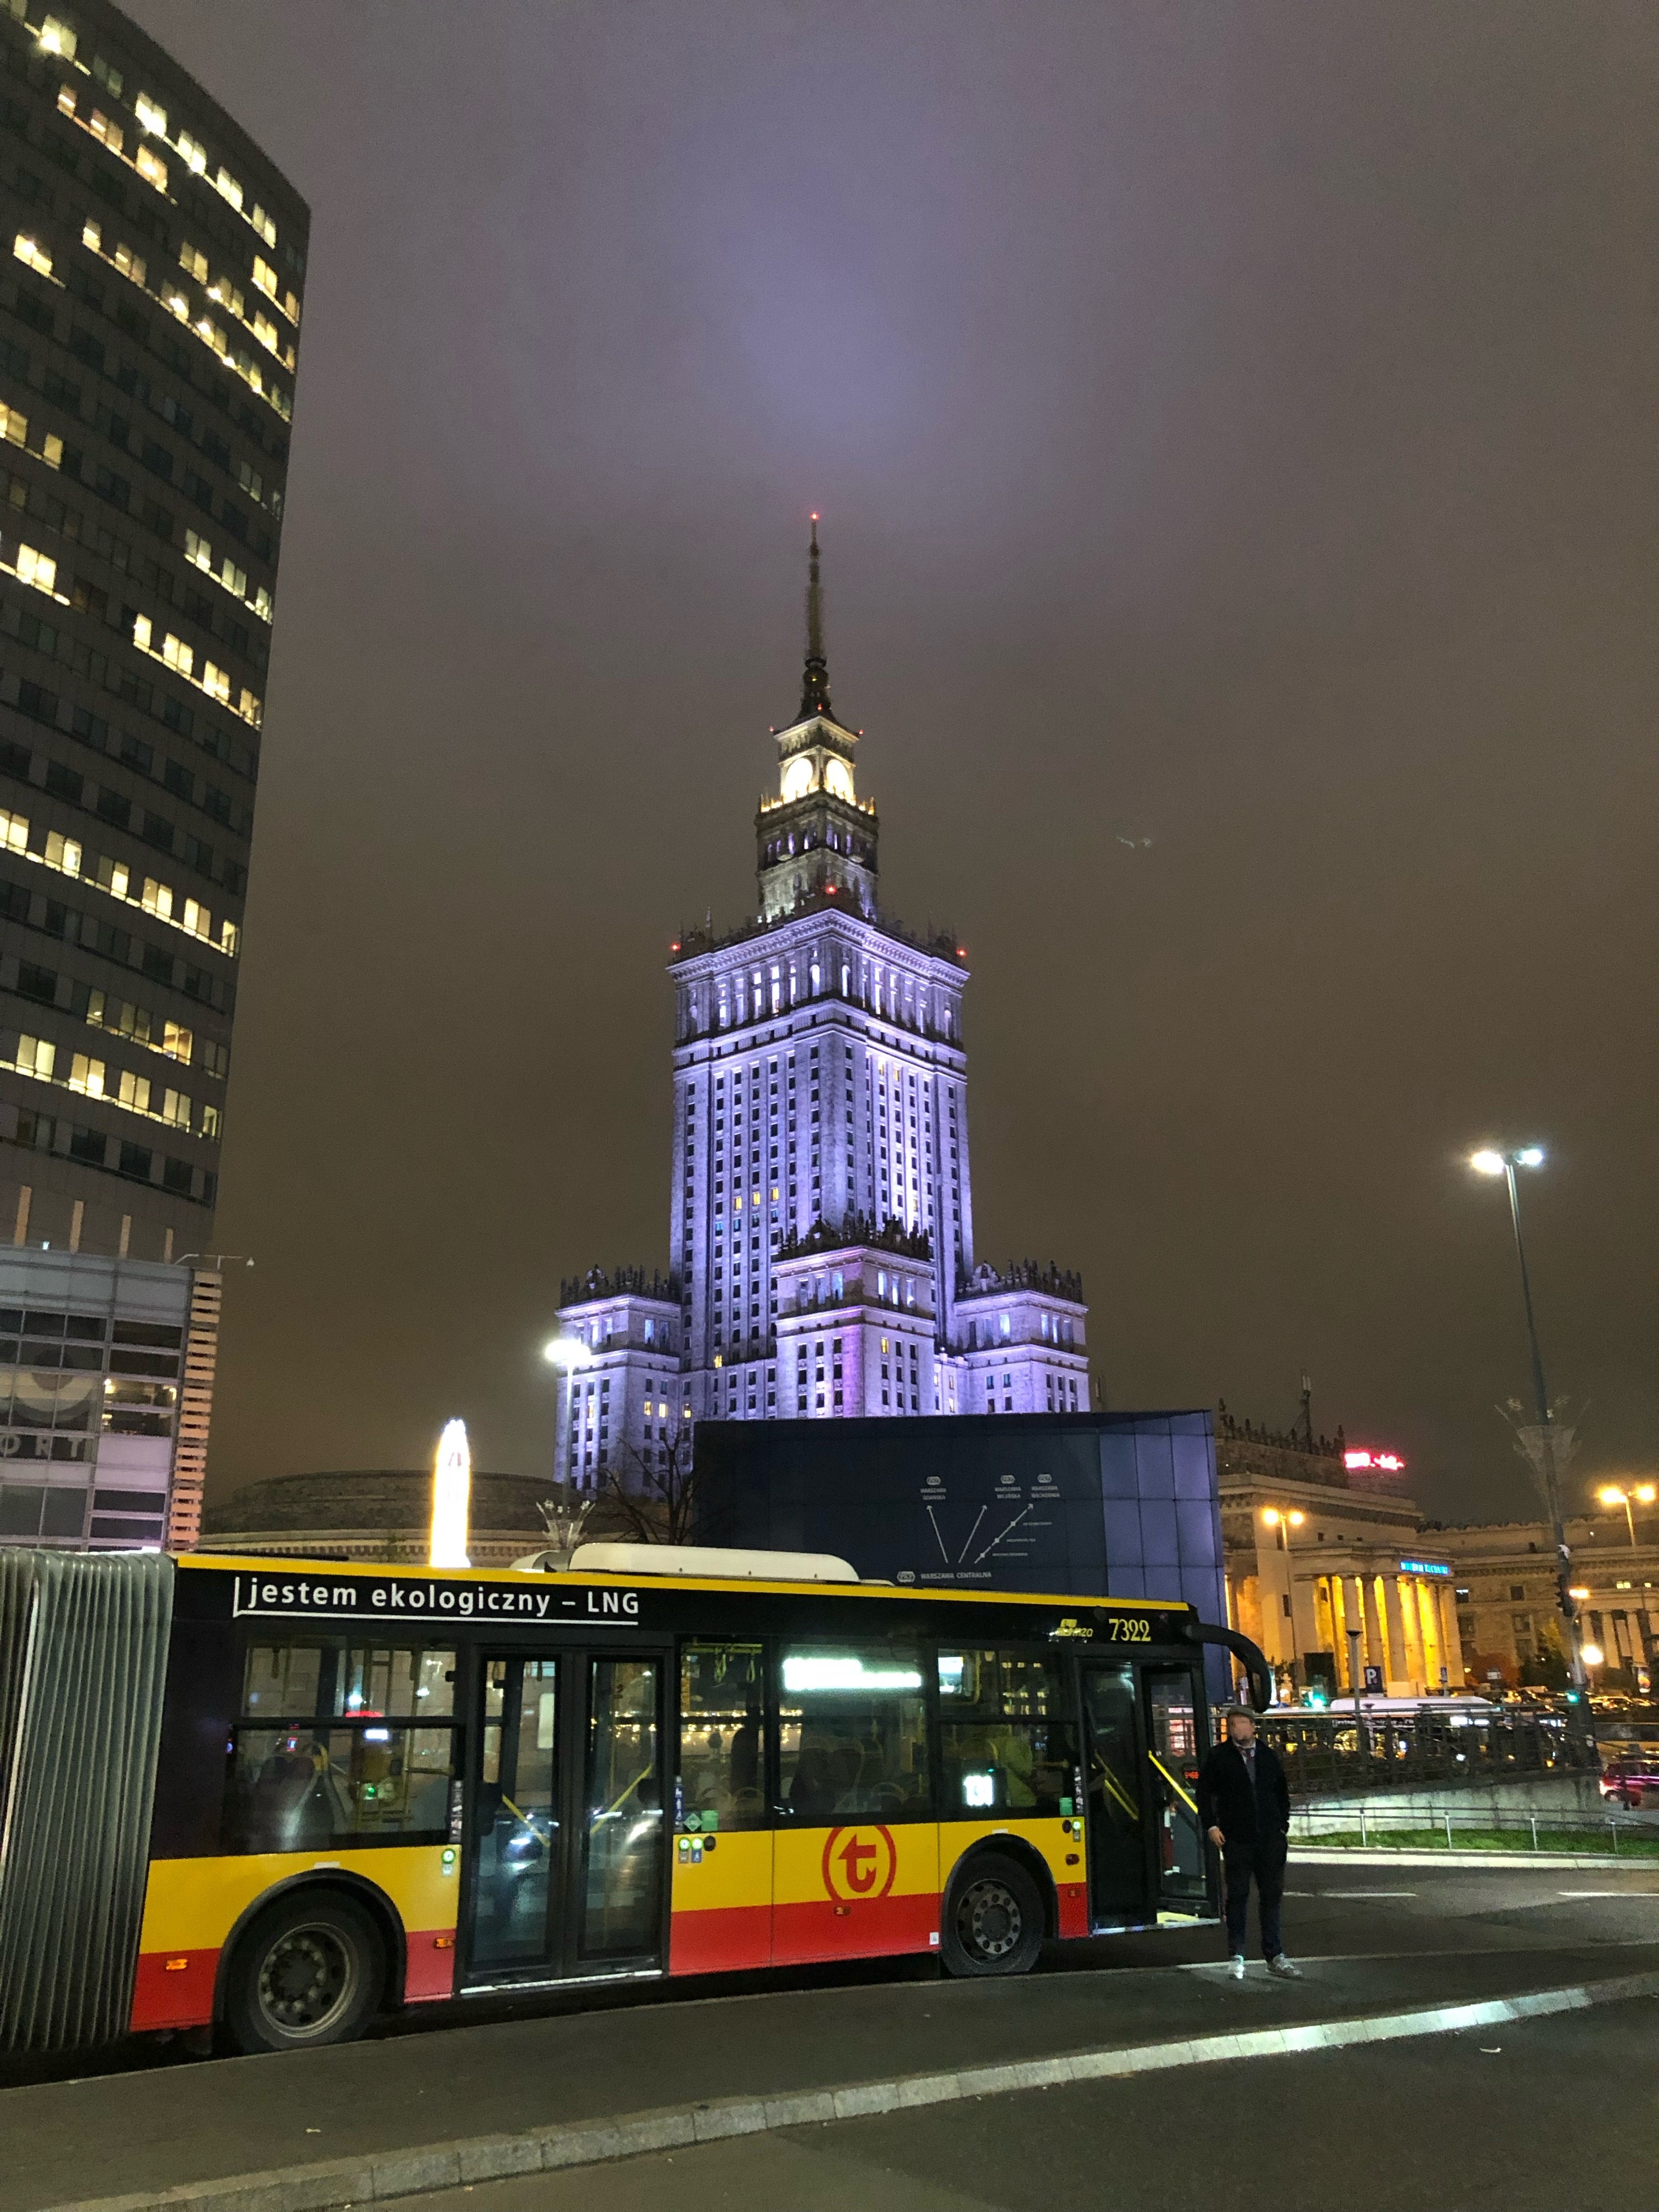 Autobus komunikacji miejskiej na tle pałacu kultury w Warszawie